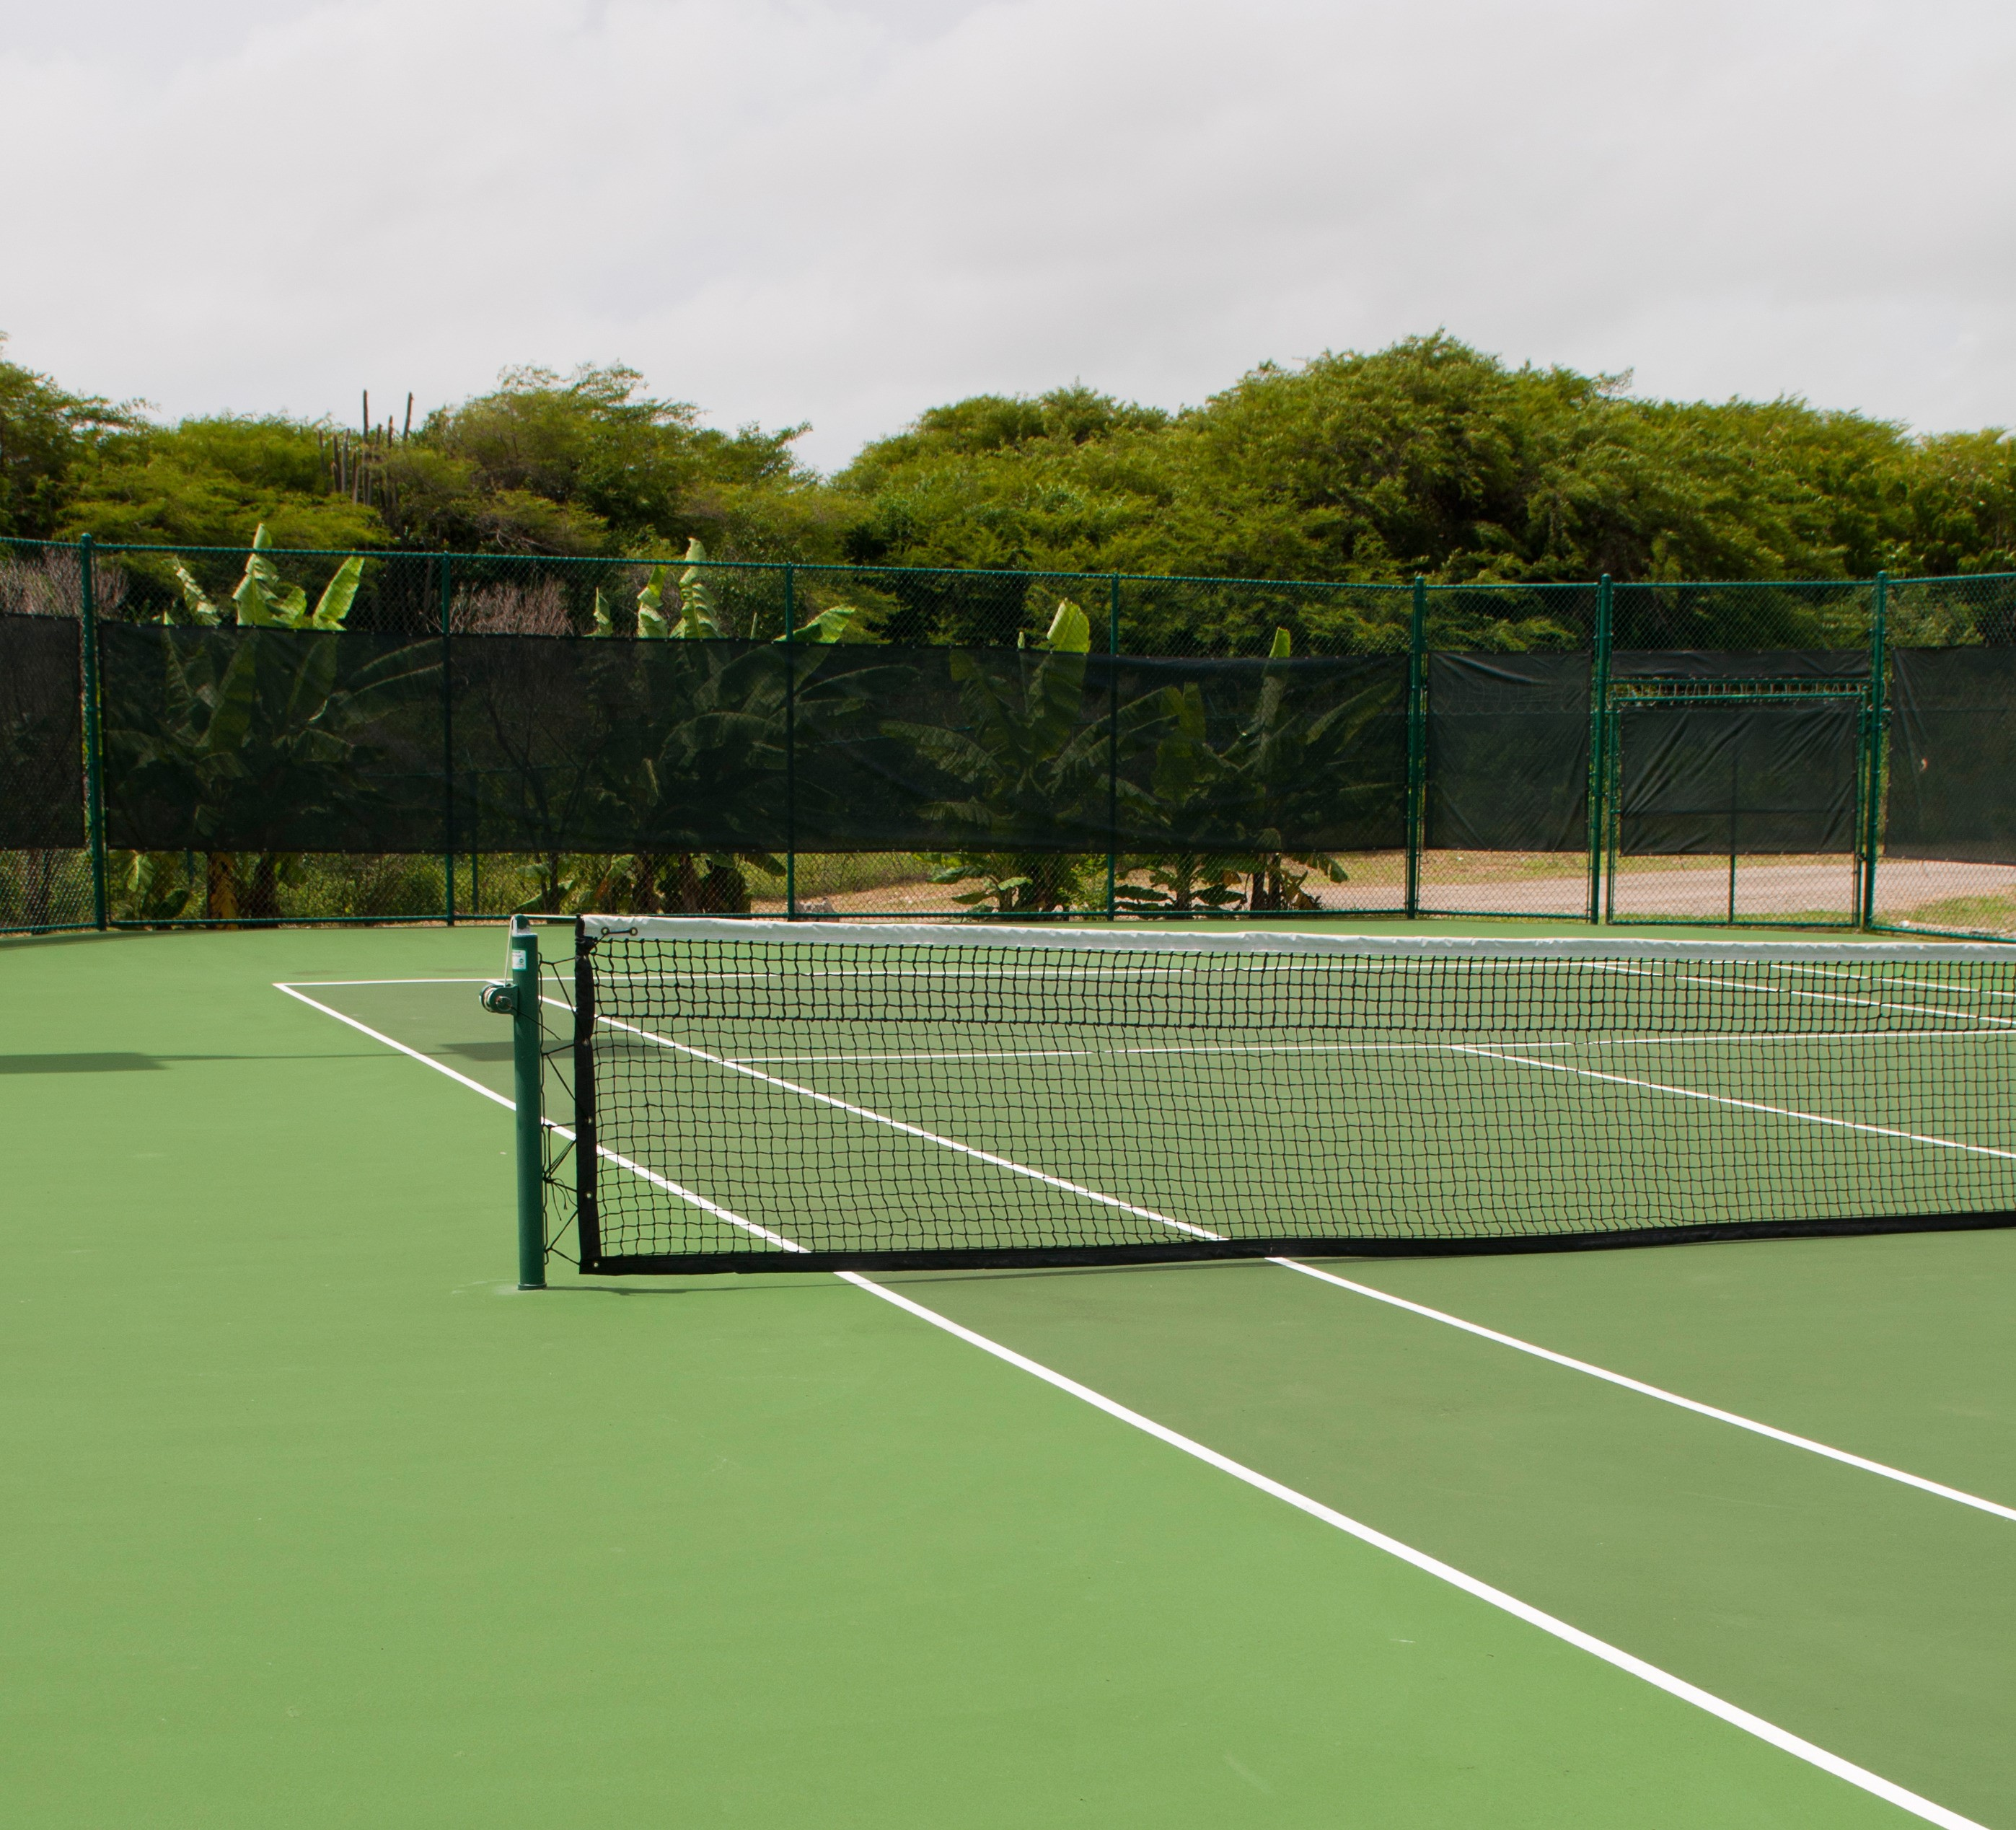 uploads/slider/20150923/tennis-court_mJ7fDV.jpg